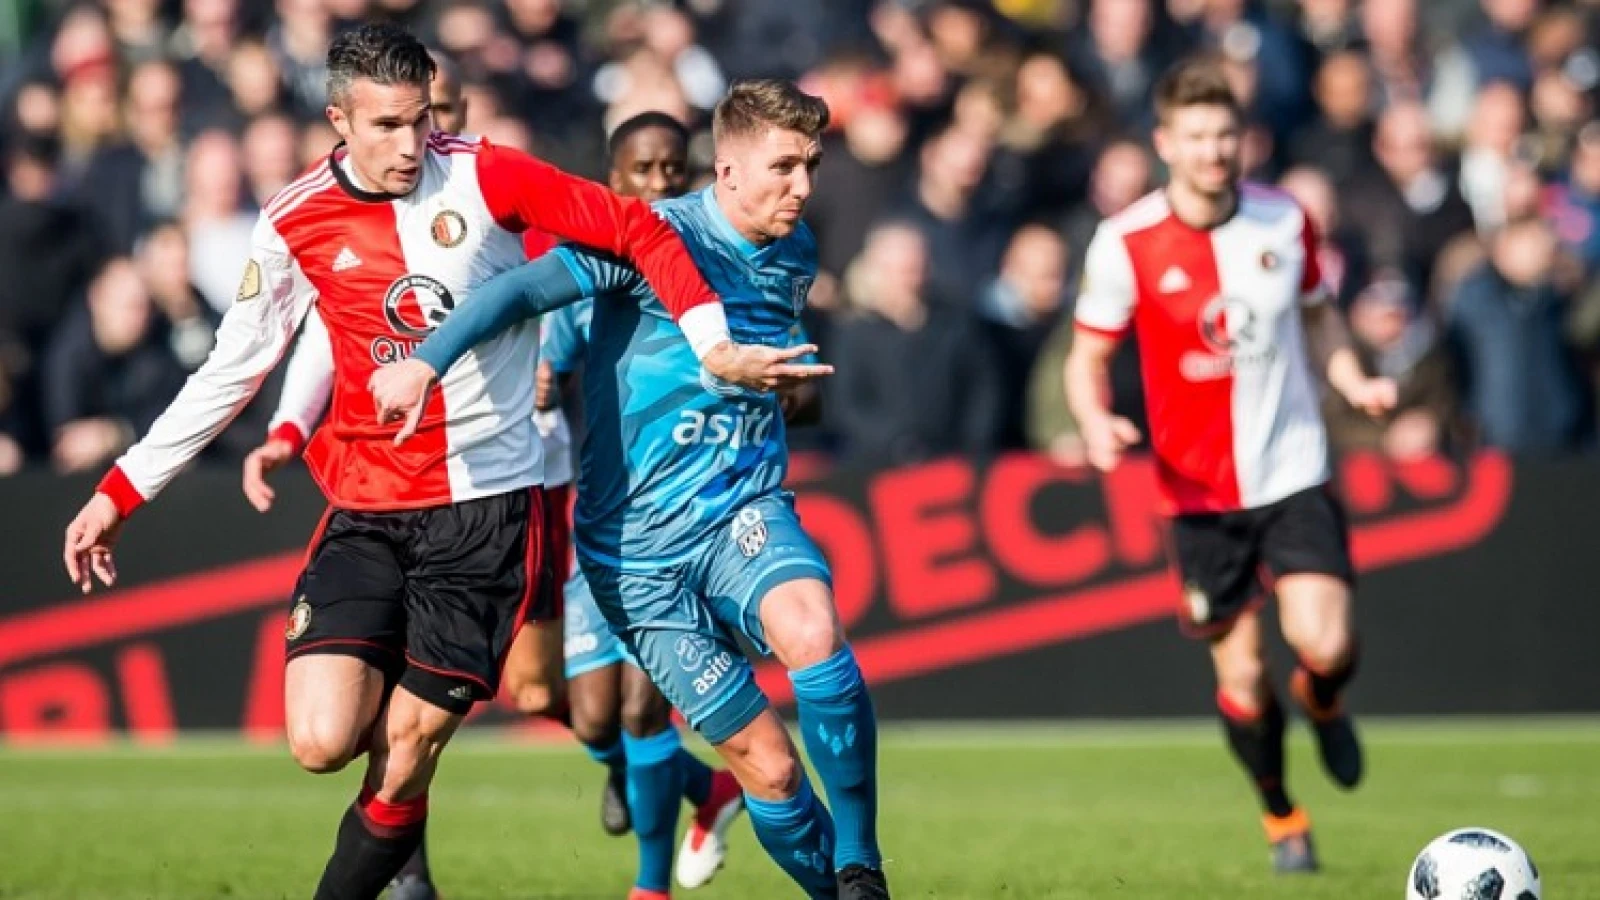 LIVE | Feyenoord - Heracles Almelo 1-0 | Einde wedstrijd